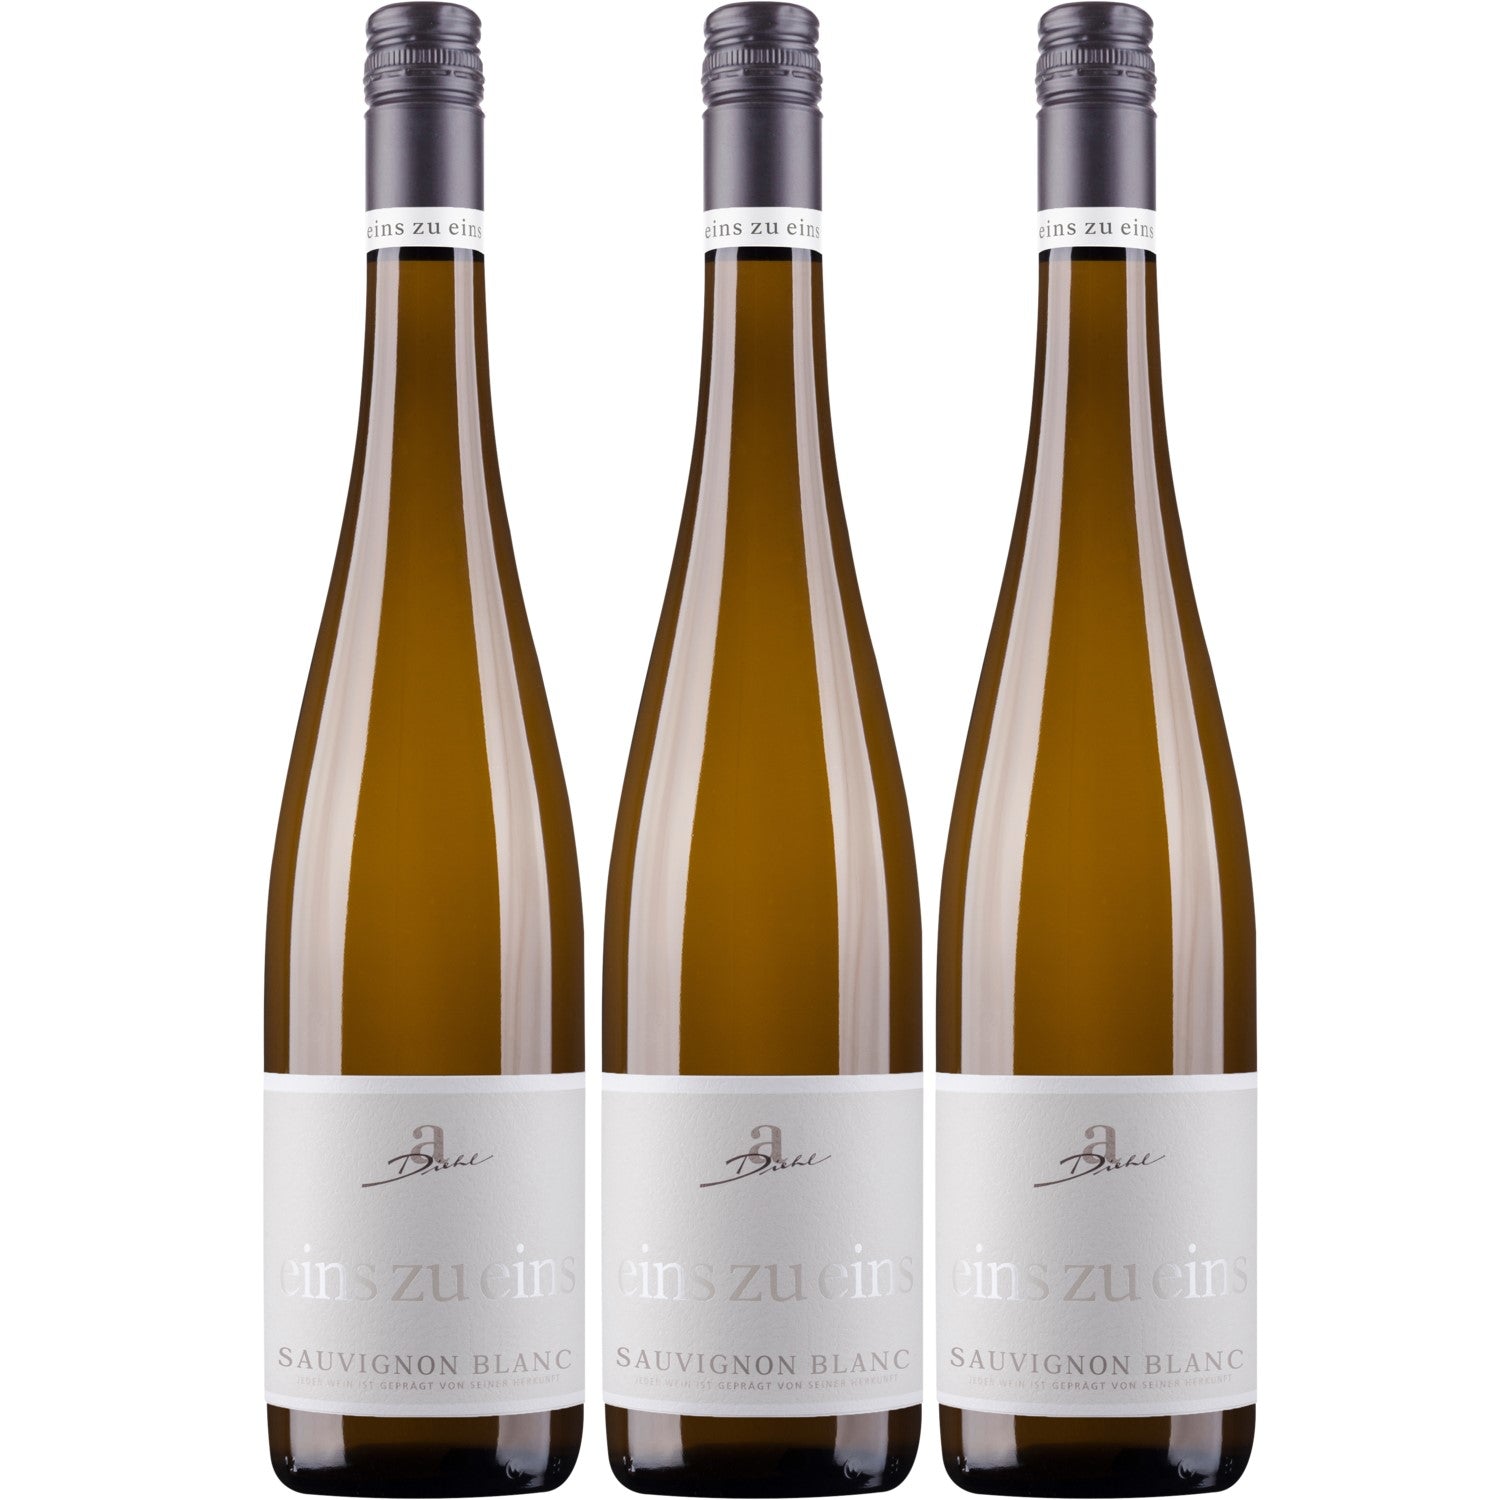 A. Diehl Sauvignon Blanc eins zu eins Wein trocken QbA Deutschland (3 x 0.75l) - Versanel -